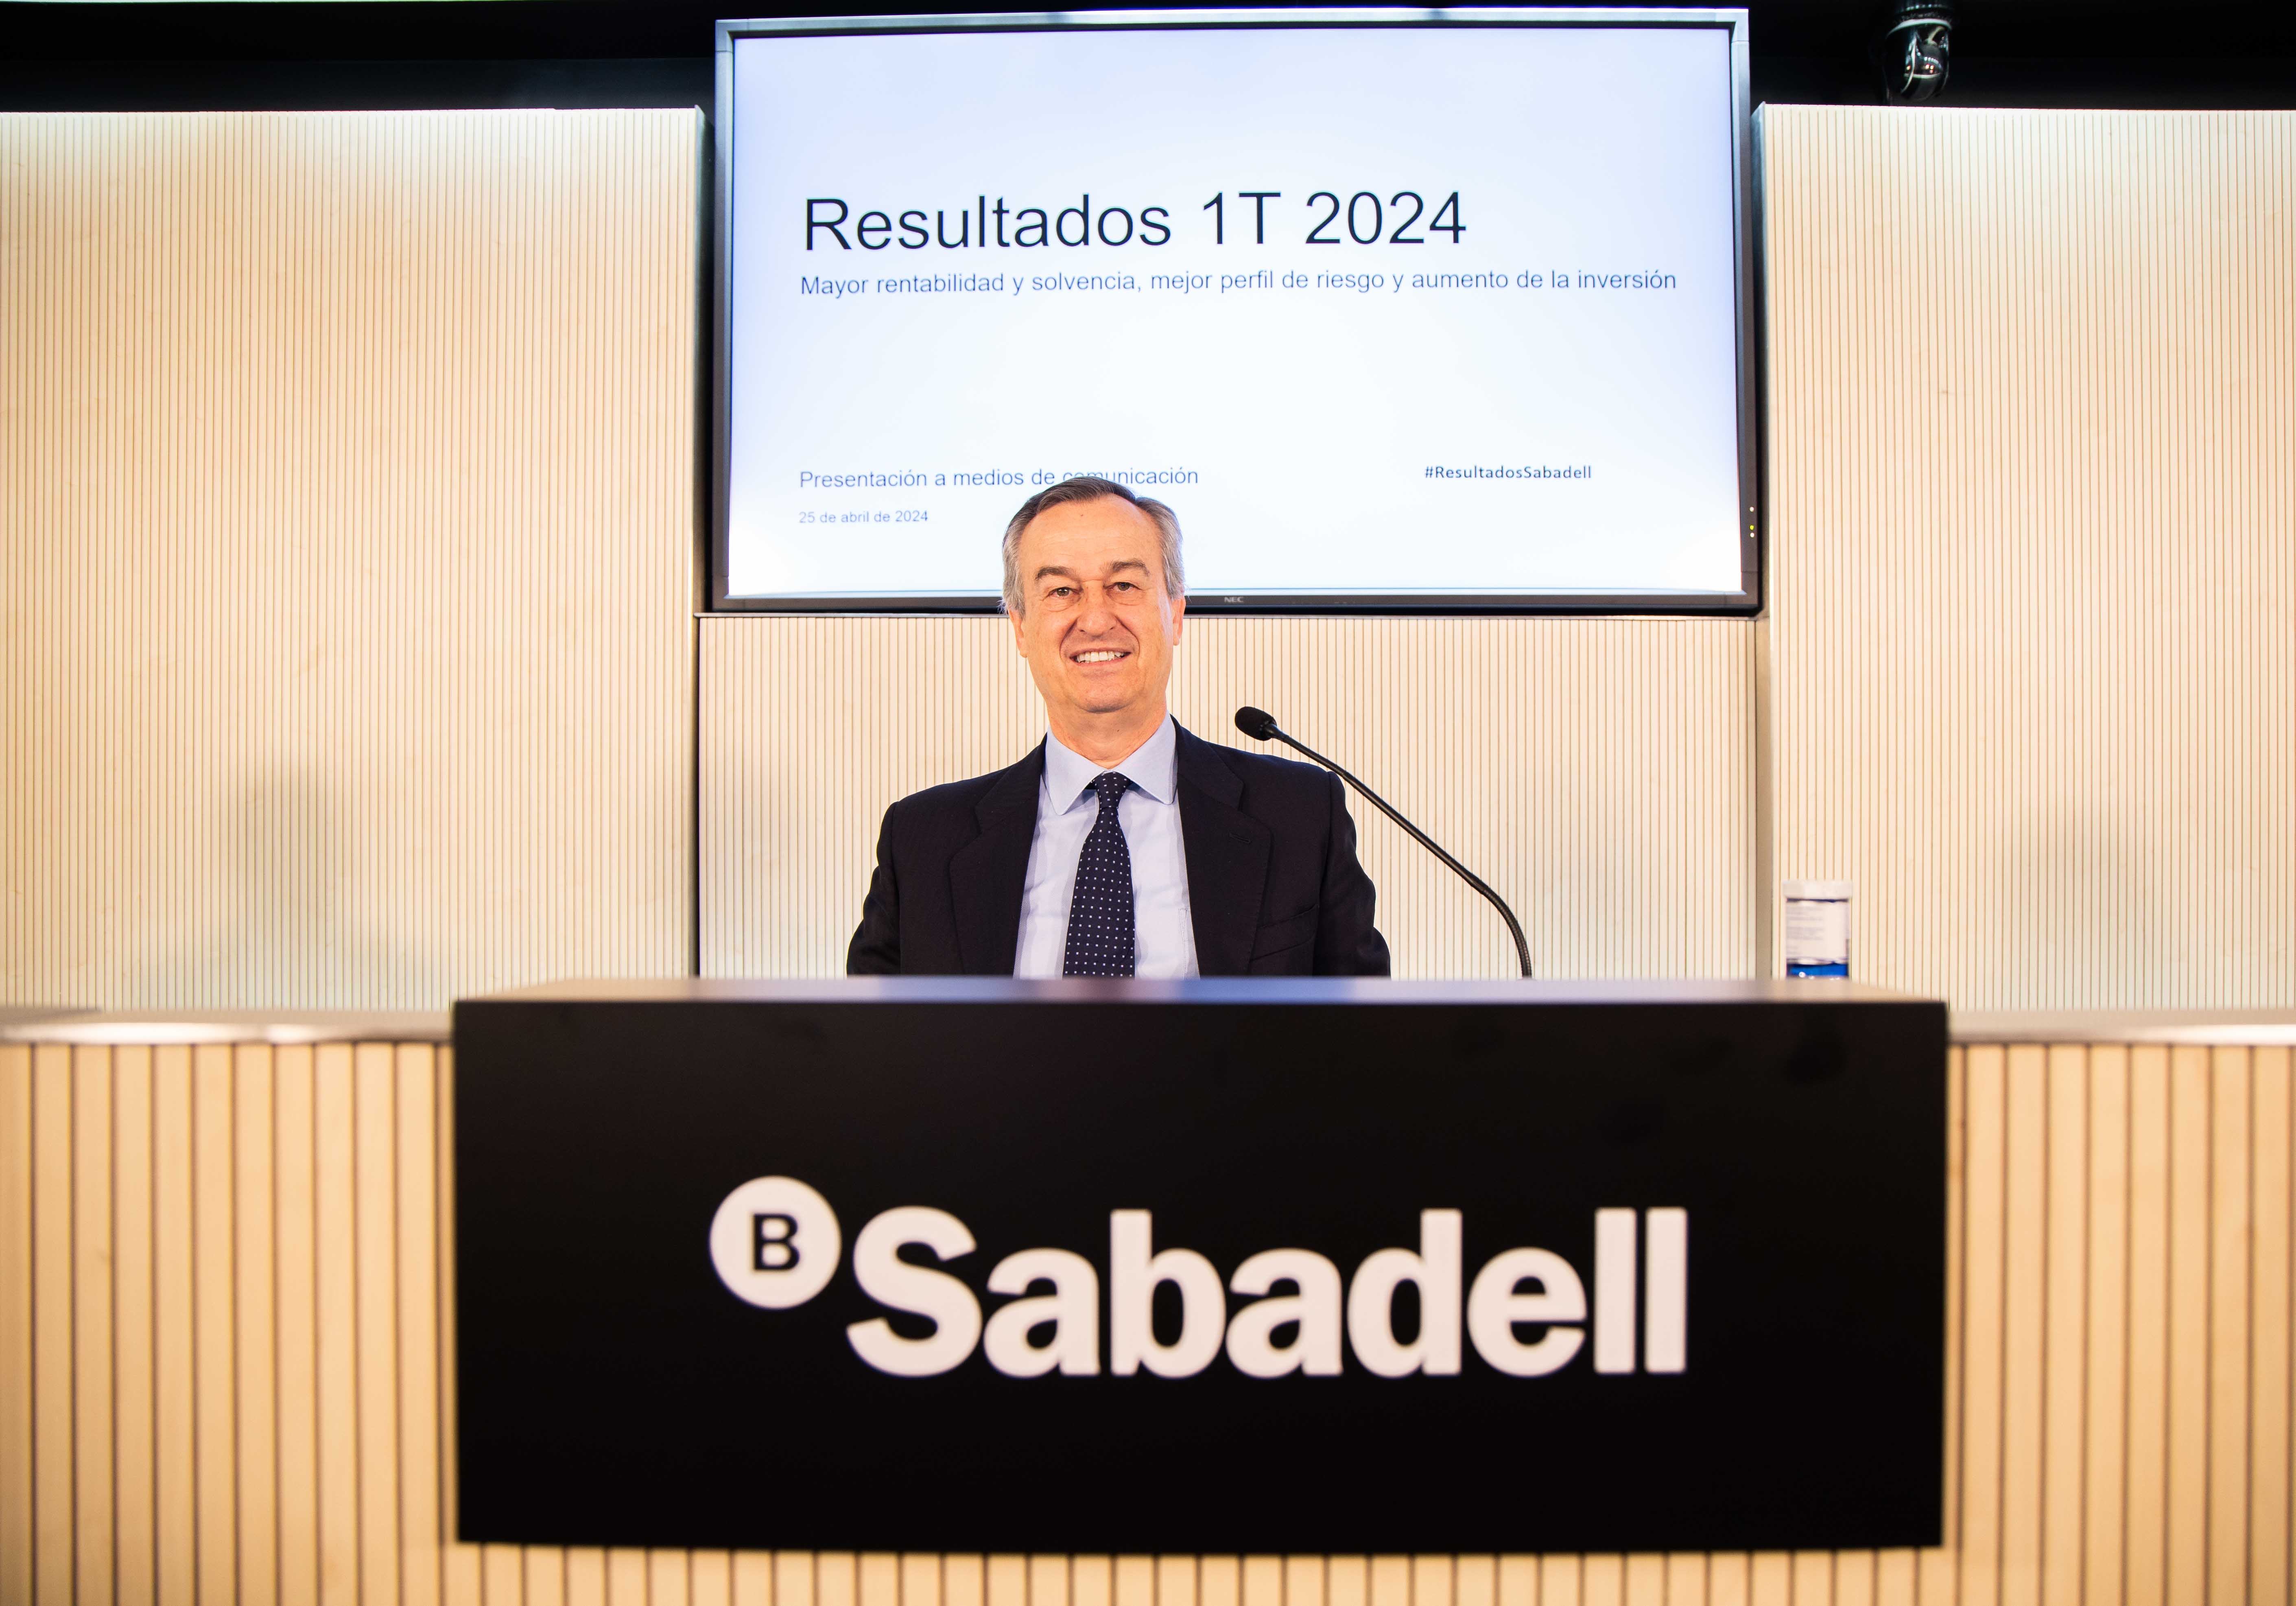 El Sabadell fia el seu creixement del 2025 al Regne Unit: el resultat a Espanya "decaurà"